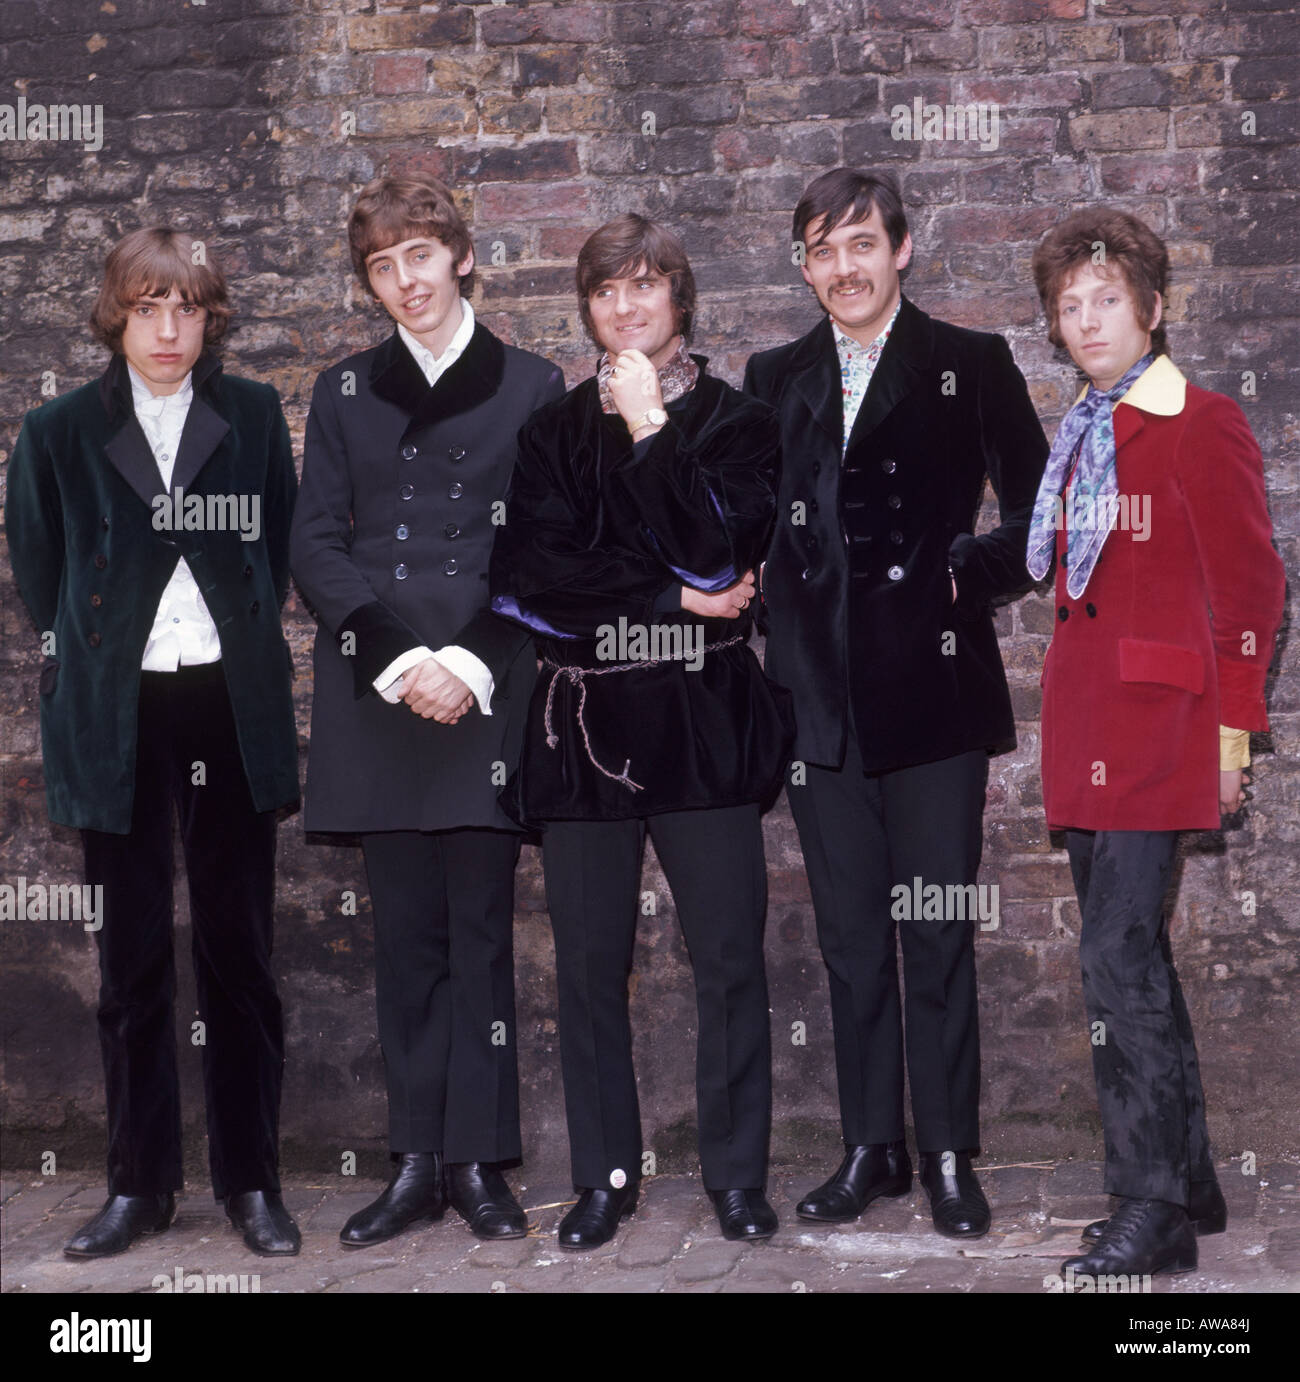 At HARUM UK pop group en mai 1967, sur la libération de Whiter Shade of Pale. Voir la description ci-dessous pour des identités. Banque D'Images